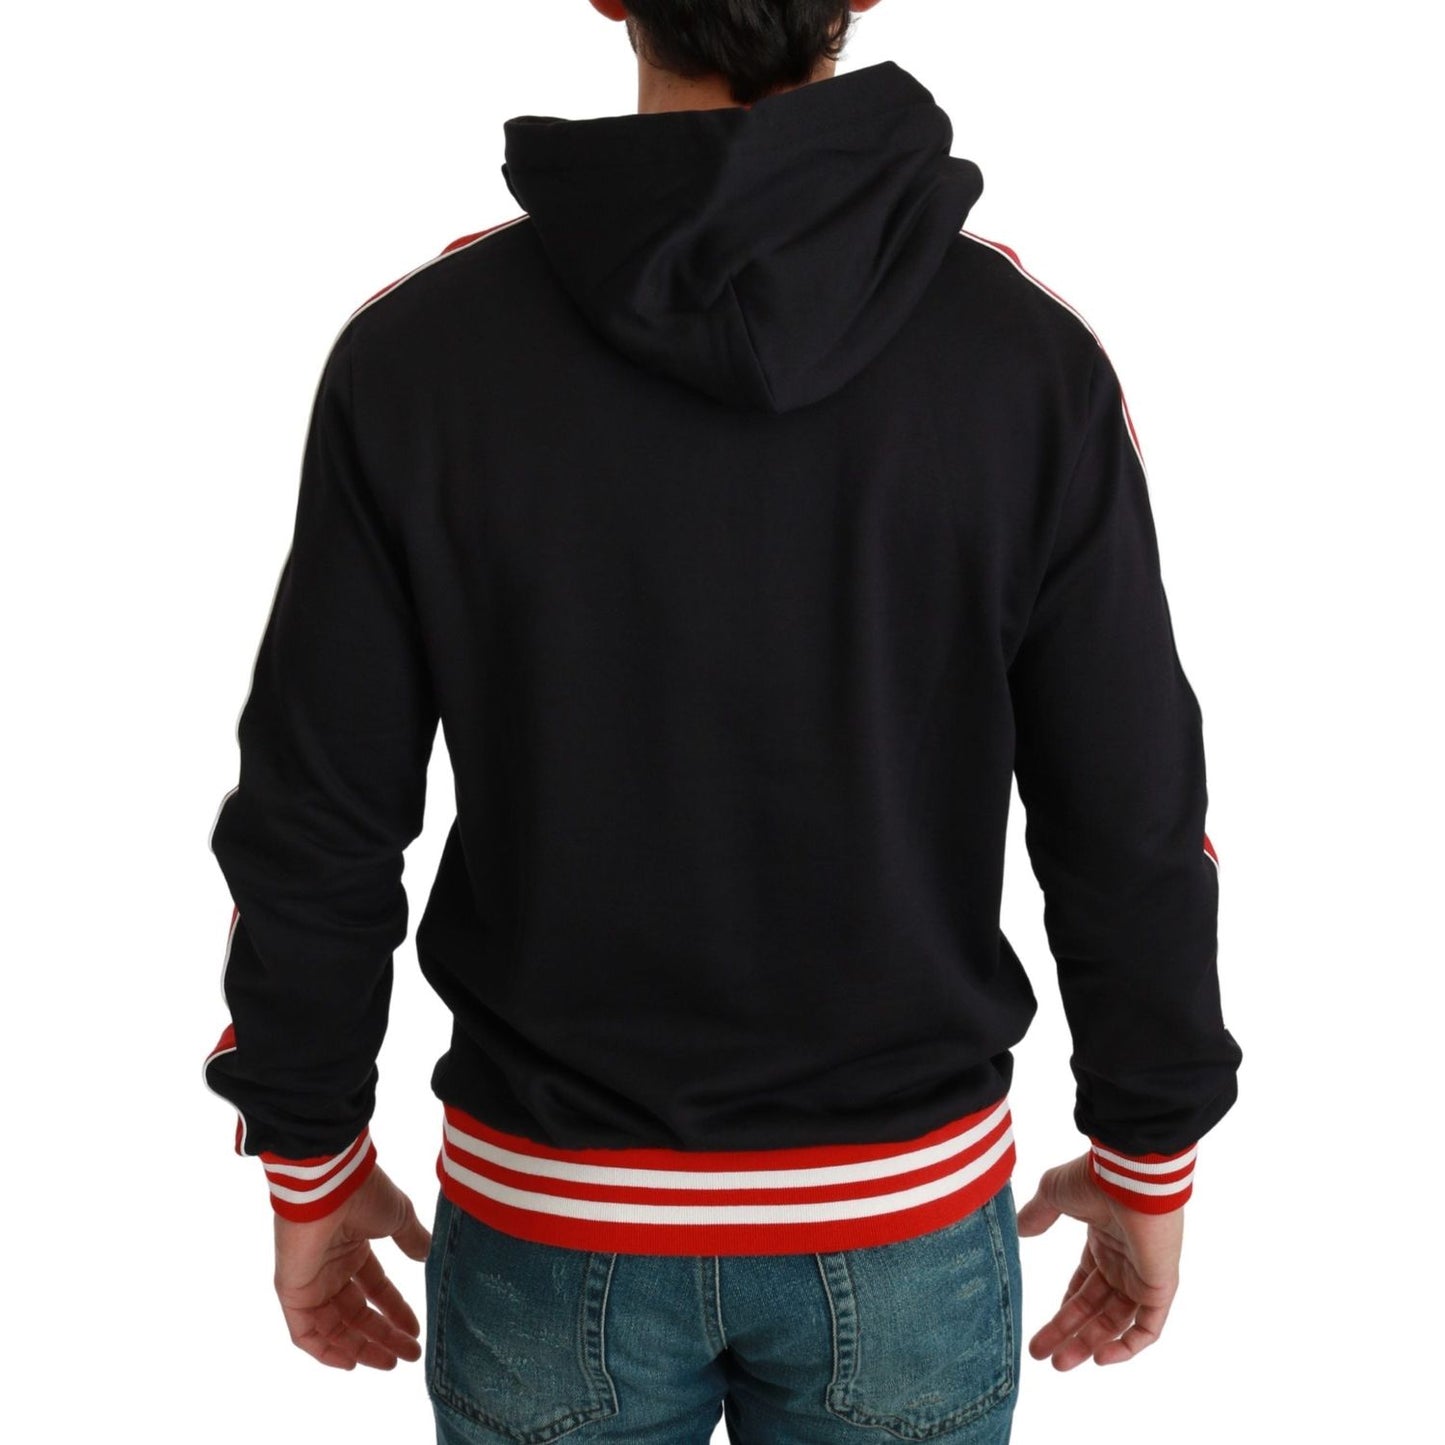 Dolce & GabbanaElegant Black Hooded Sweater with Multicolor MotifMcRichard Designer Brands£379.00